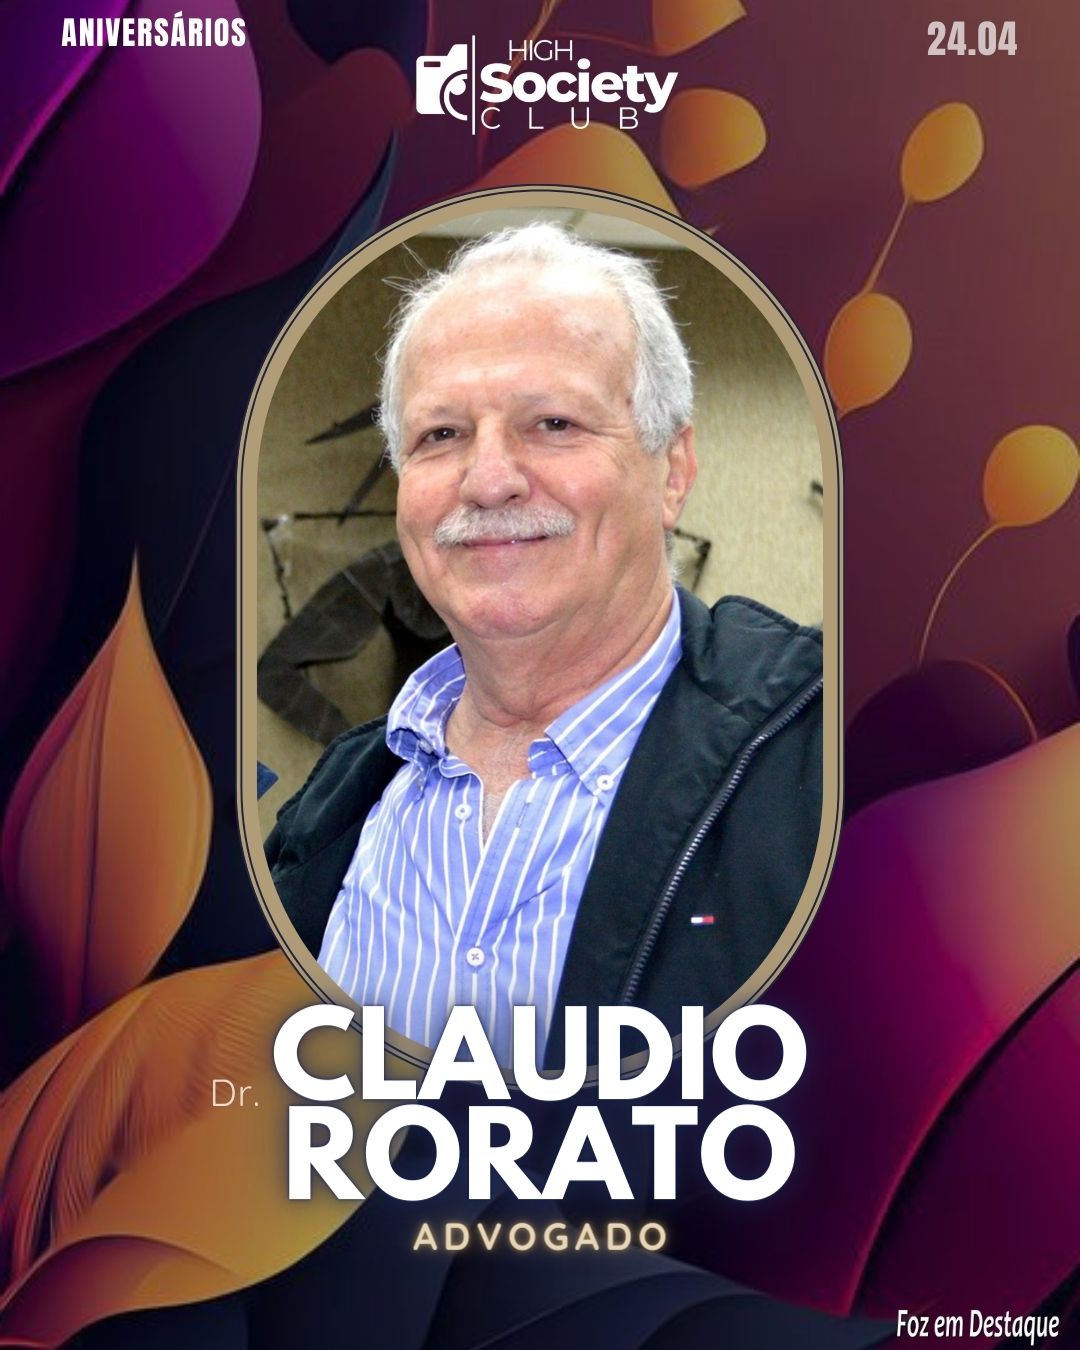 Dr. Claudio Rorato - Advogado
 Aniversários 24 de Abril 2024 High Society Club Foz em Destaque